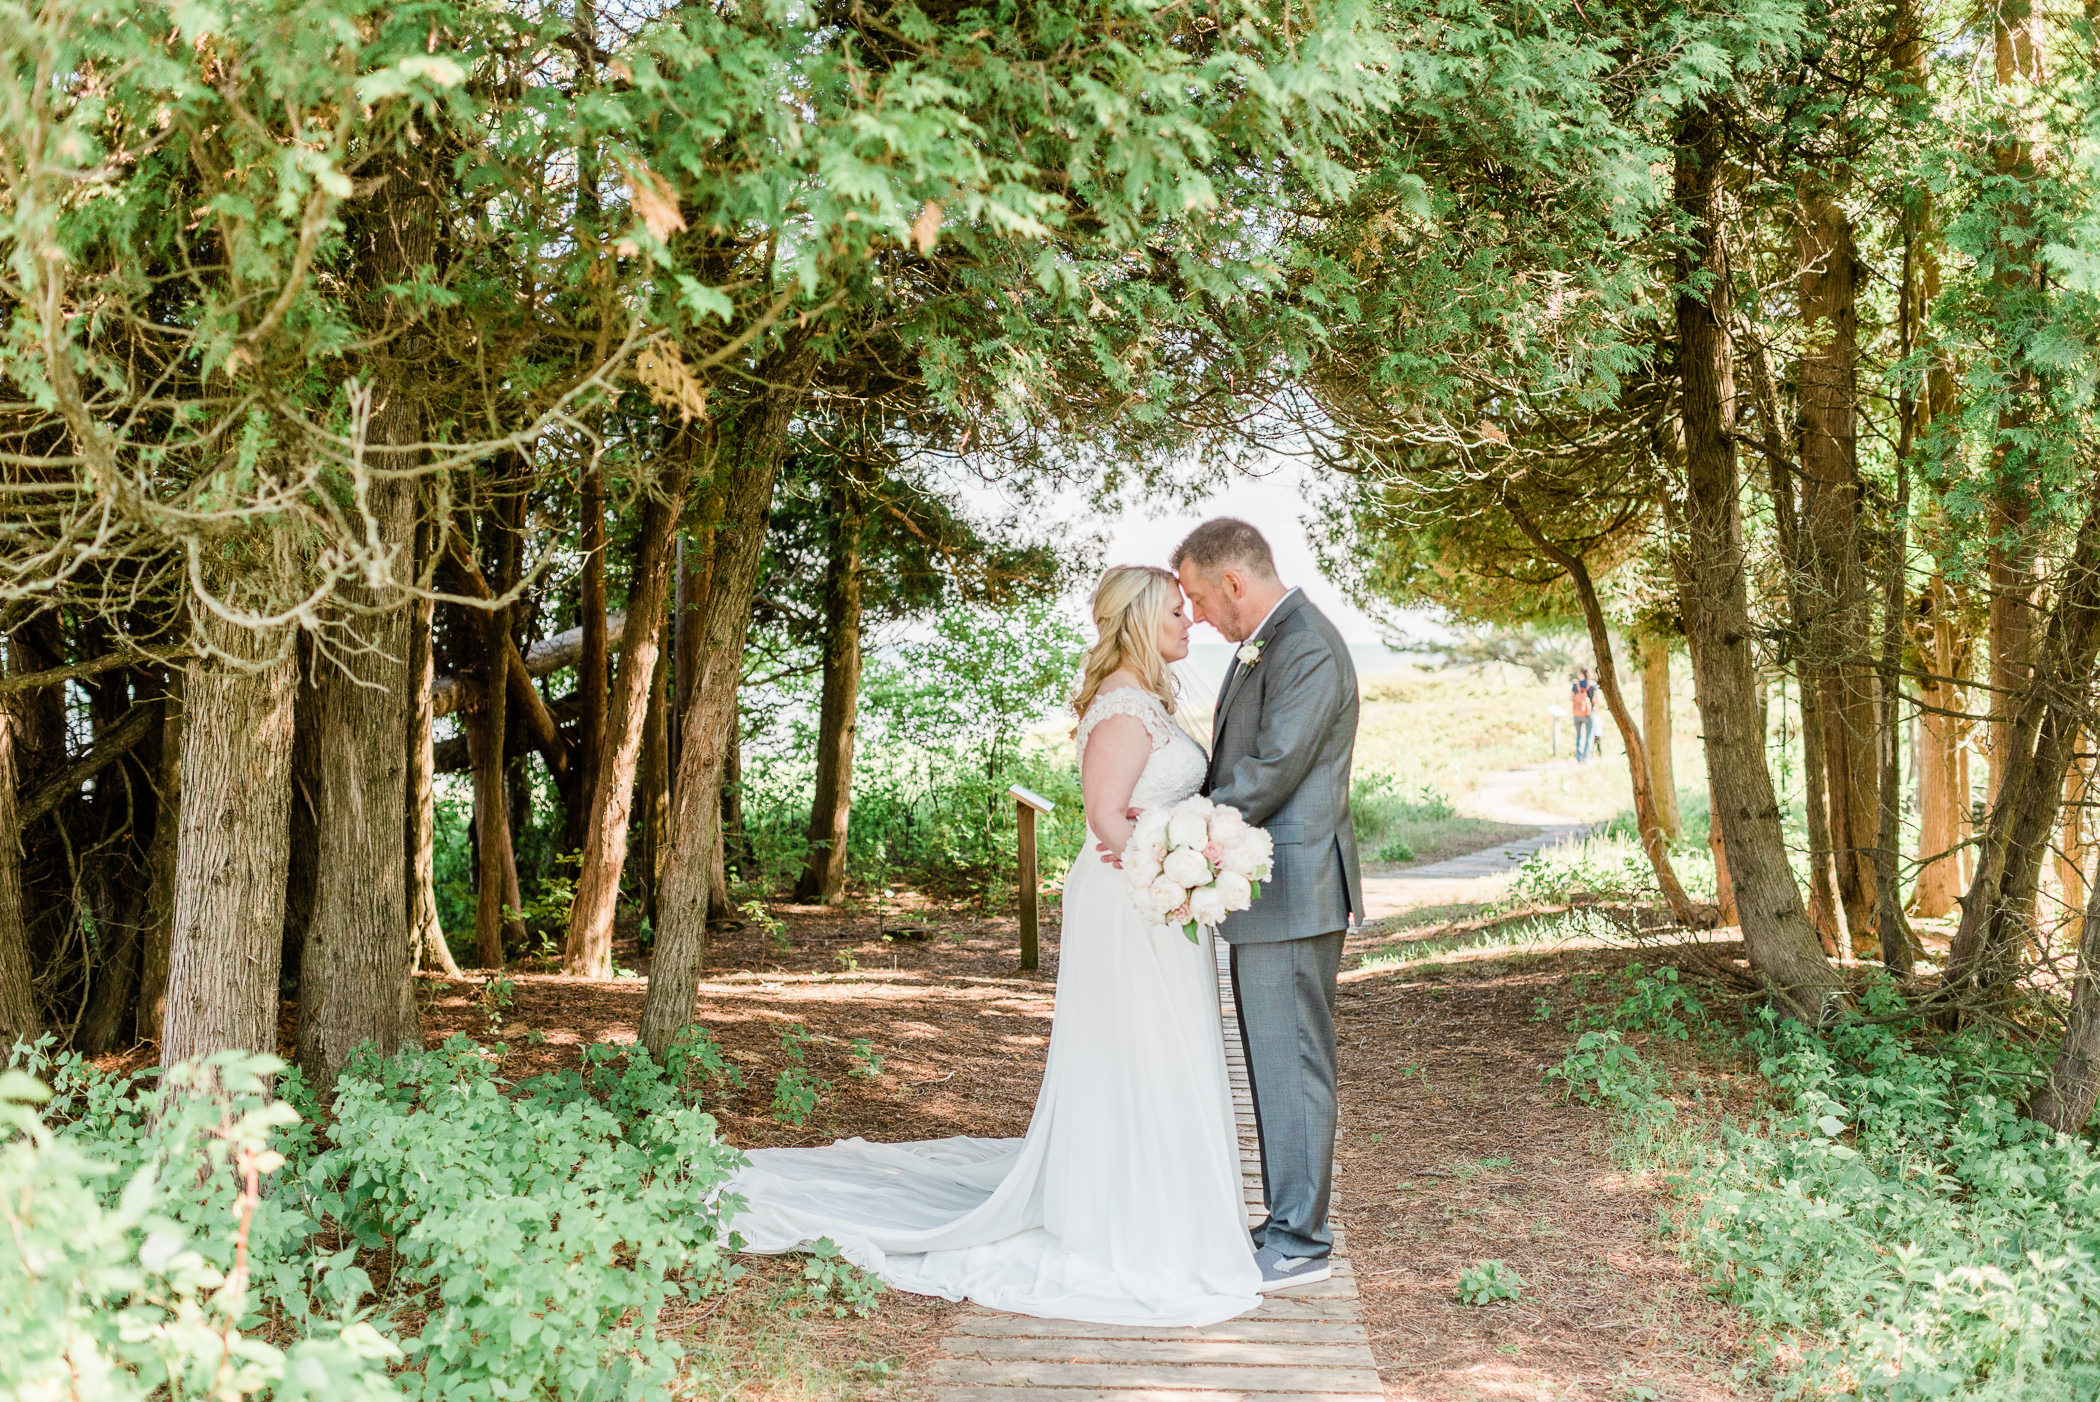 Kohler-Andrae State Park Wedding Photographer - Larissa Marie Photography